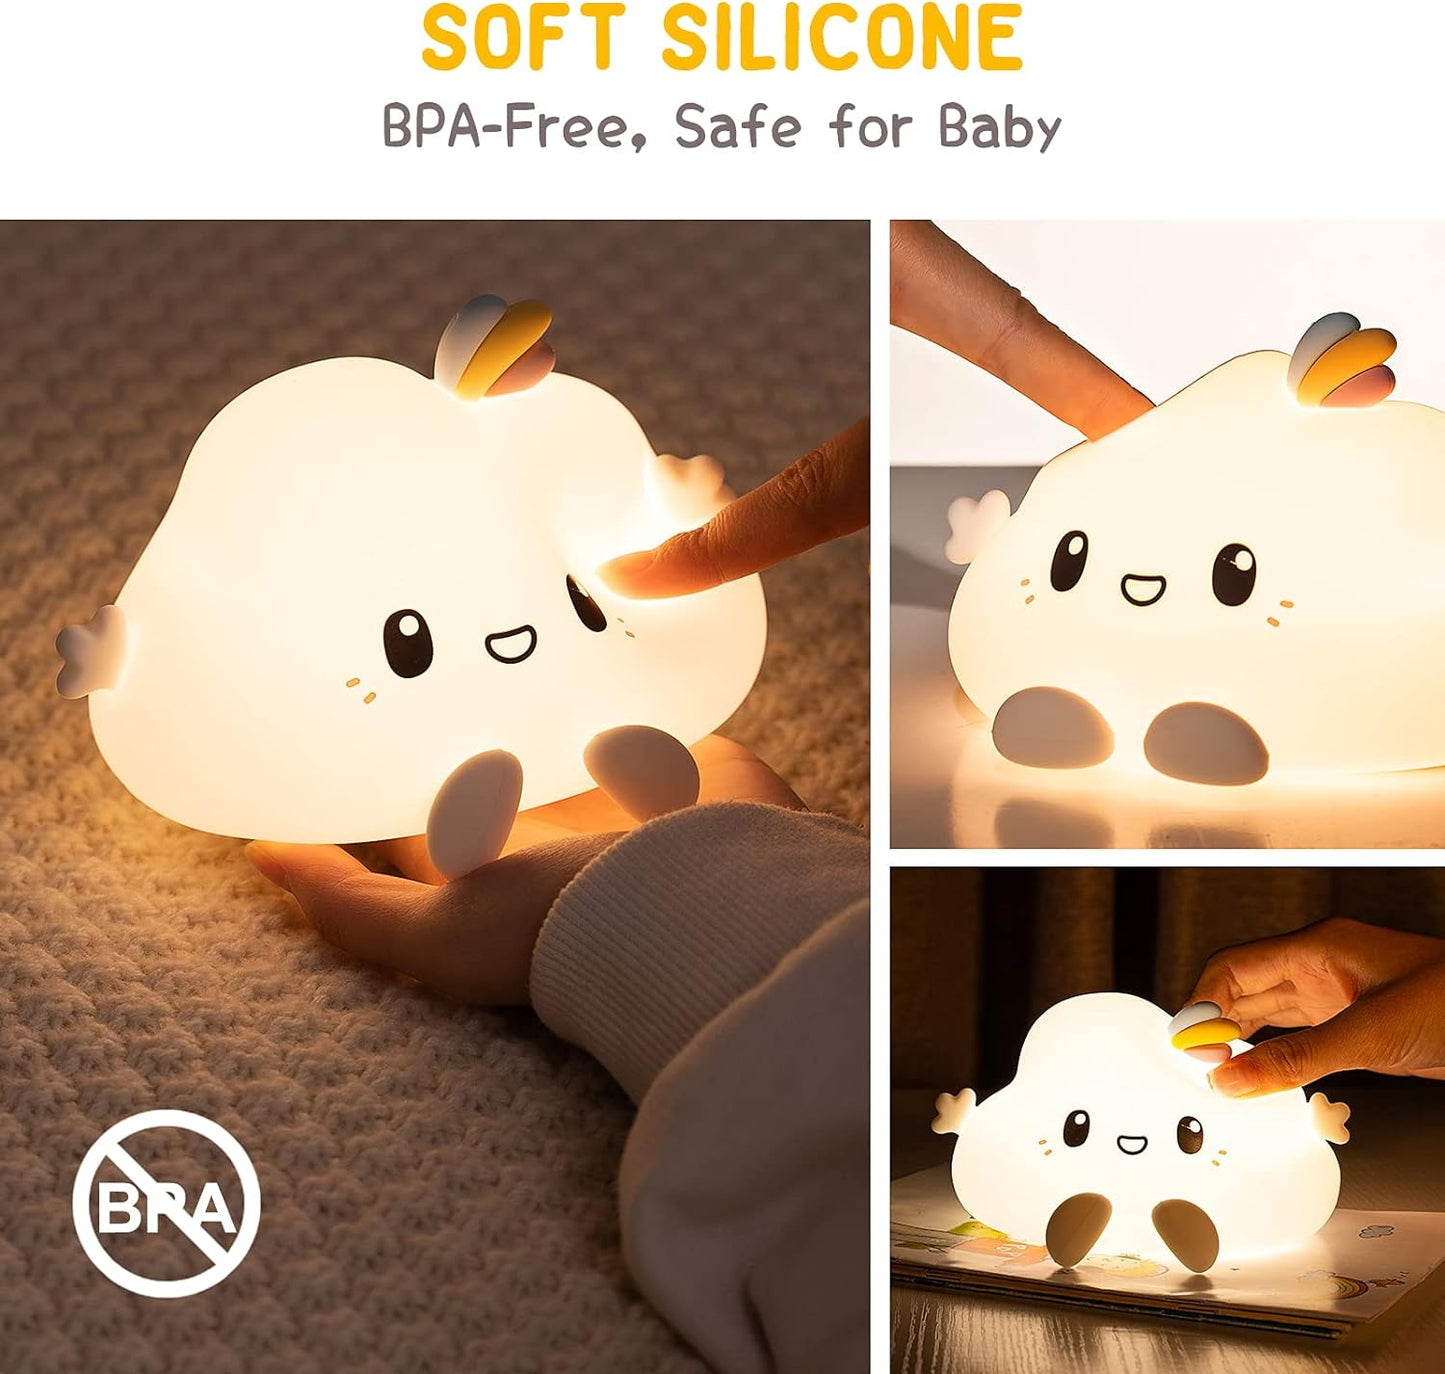 Groov-e Cuties - Olly Cloud - Luz noturna LED que muda de cor com temporizador de 30/60 minutos - 7 cores - Toque para usar - Bateria recarregável de 12 horas ou alimentada por USB - para bebês, crianças pequenas e crianças